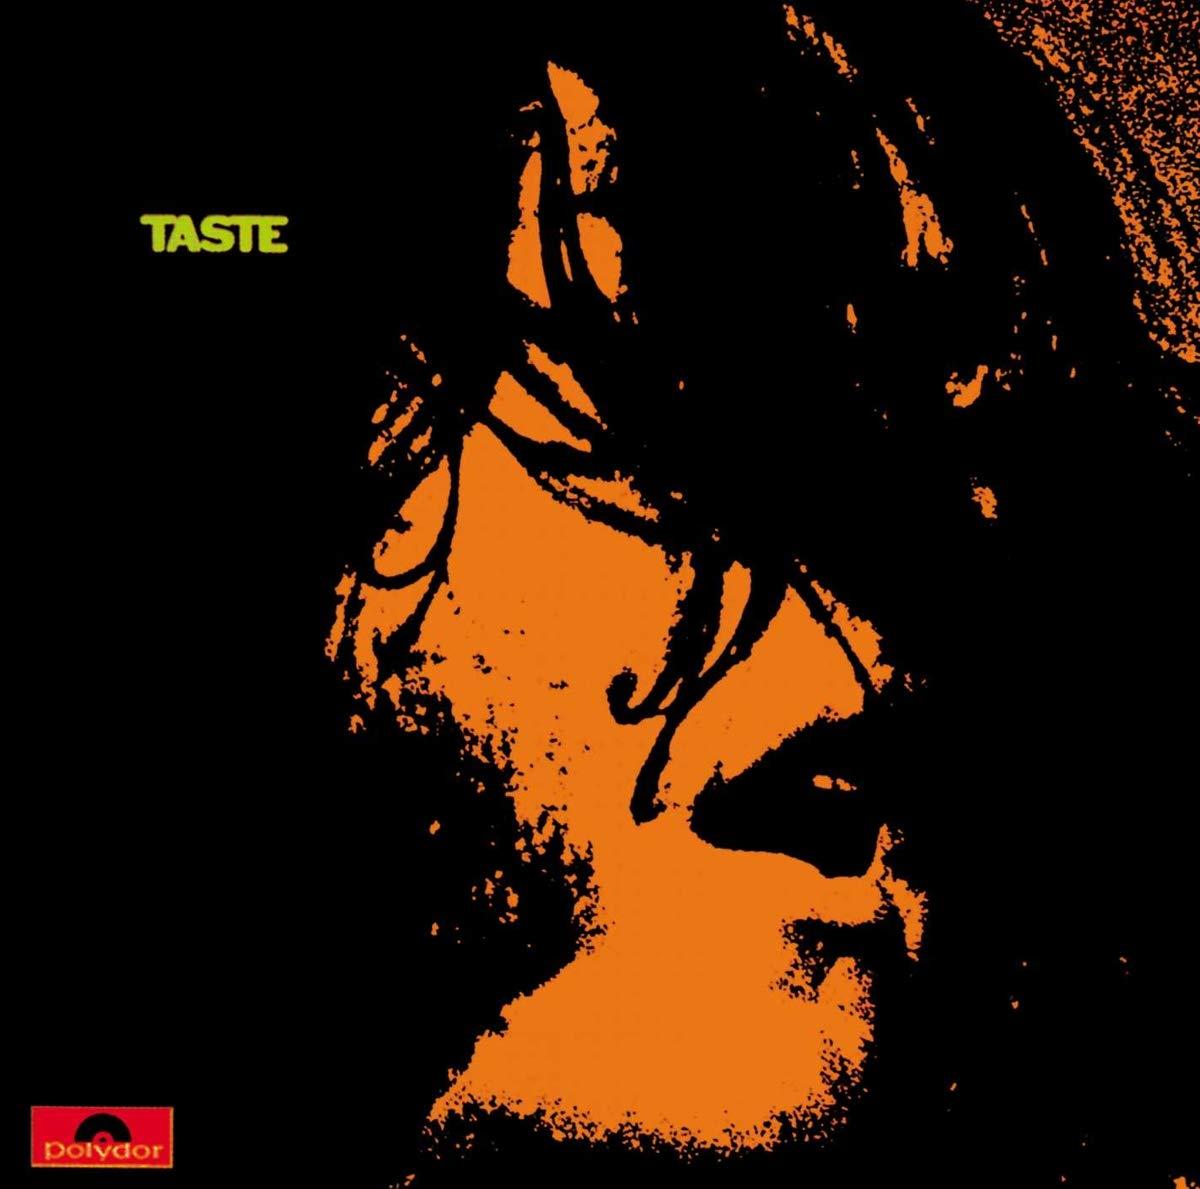 TASTE (2) – Taste